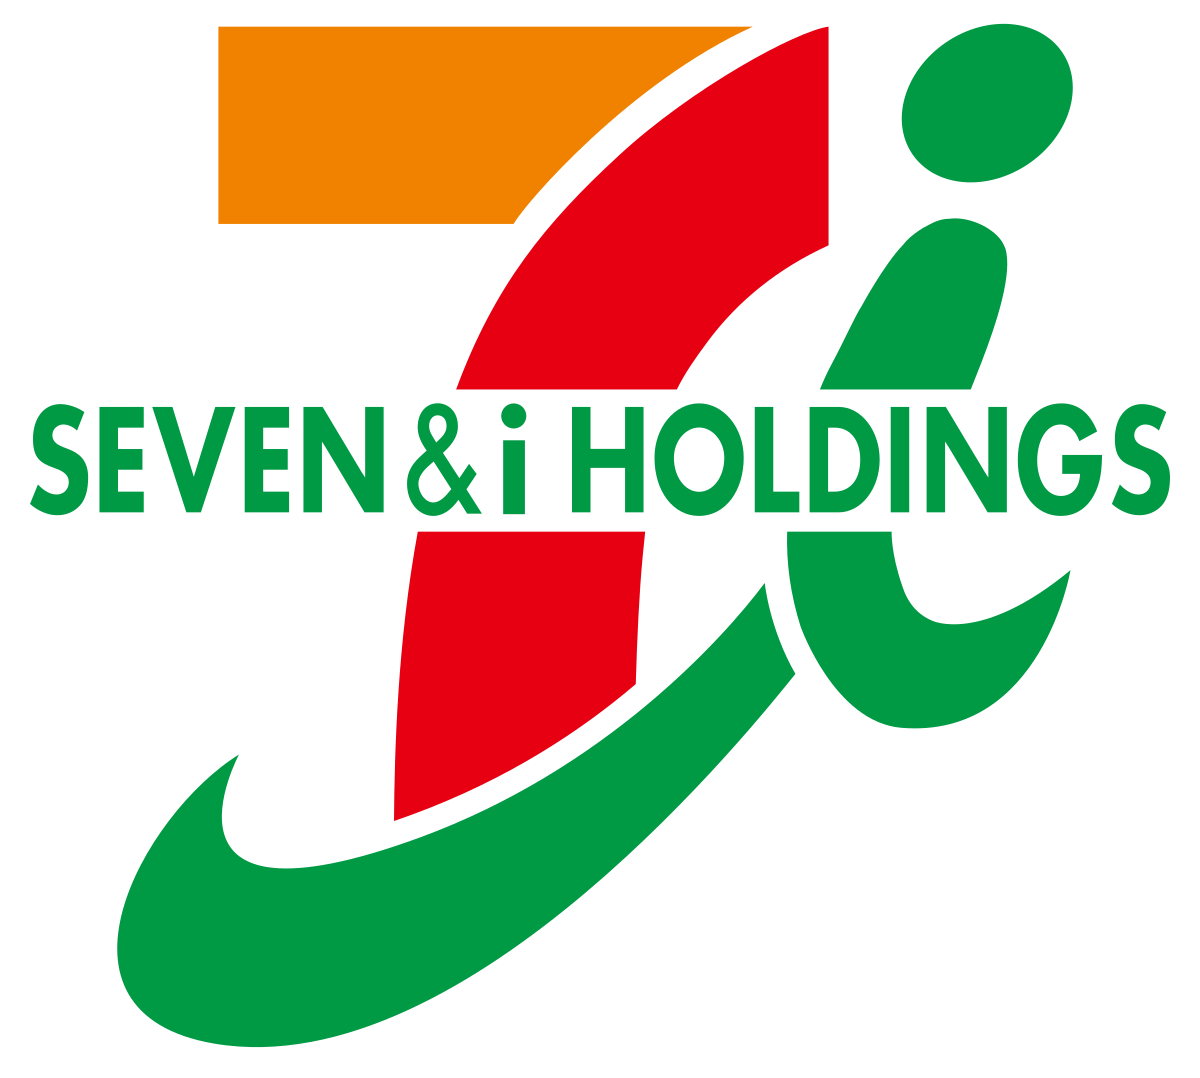 Seven & i Holdings Co Ltd